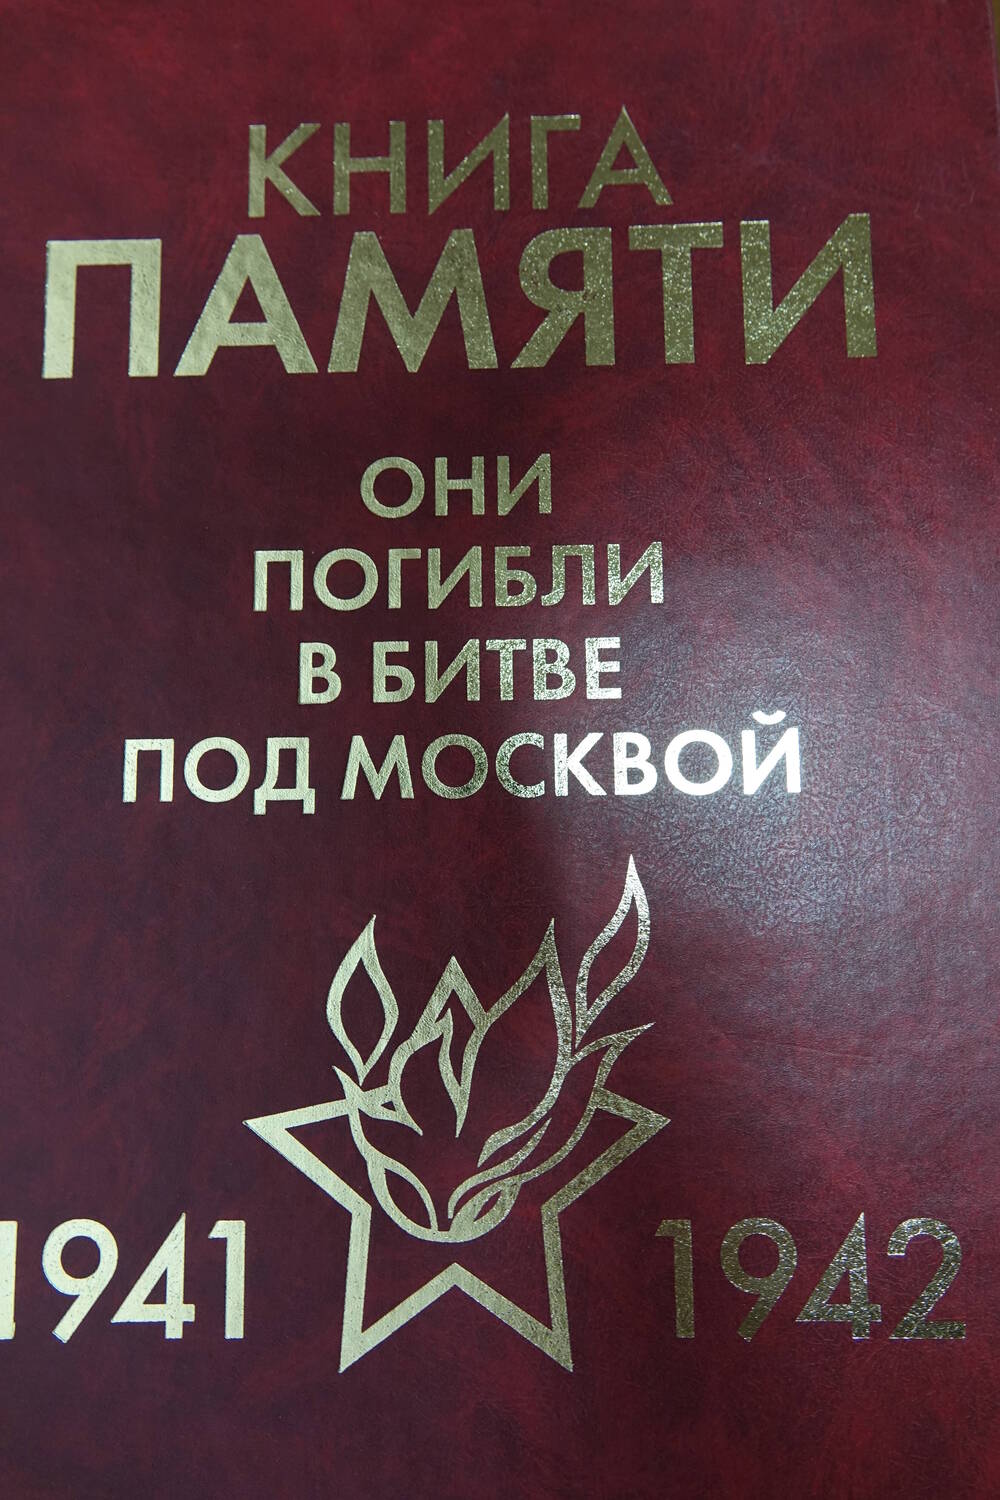 Книга Памяти «Они погибли в битве под Москвой 1941-1942гг.» Том 1 «А»